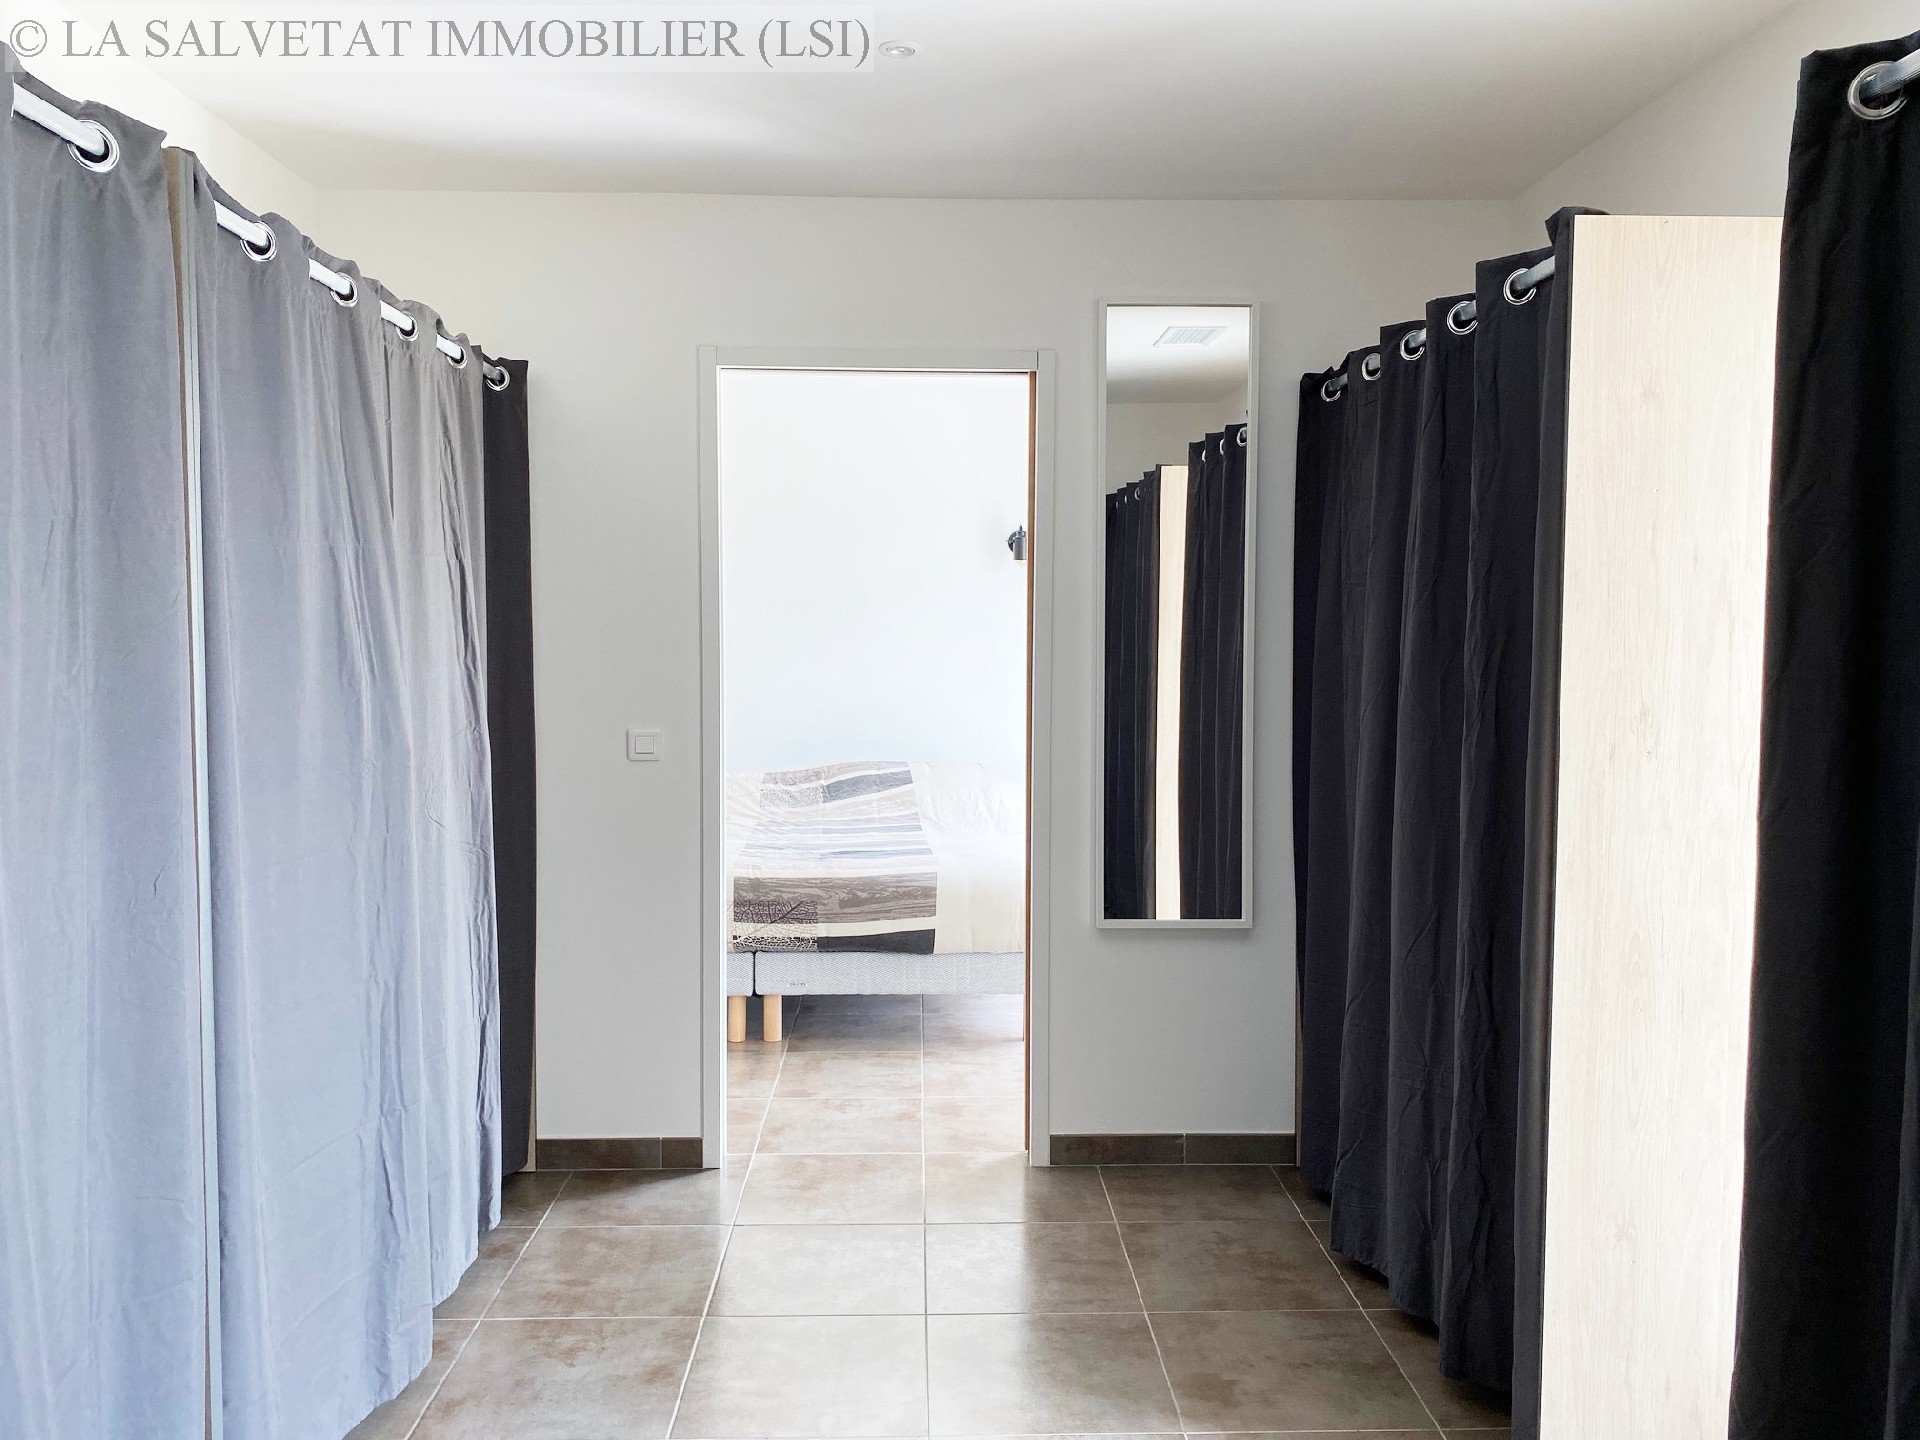 Vente maison-villa - ST THOMAS<br>155 m², 5 pièces